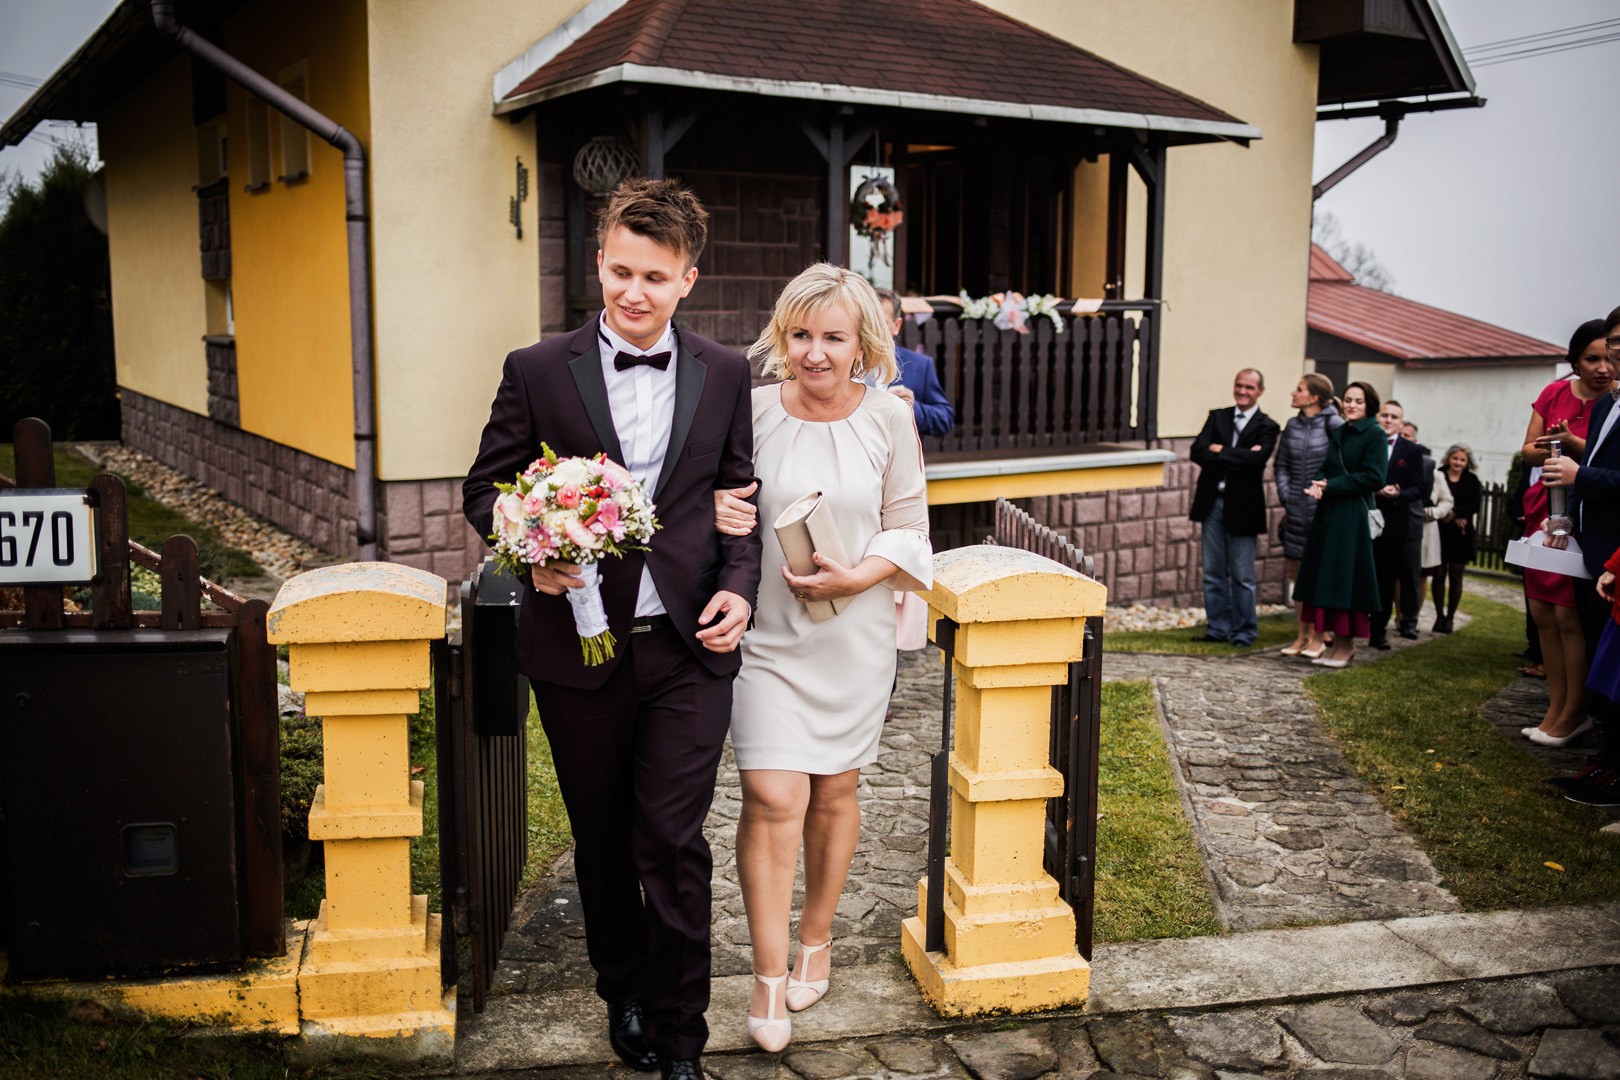 Wedding photos Maťky and Lukáš - 0087.jpg